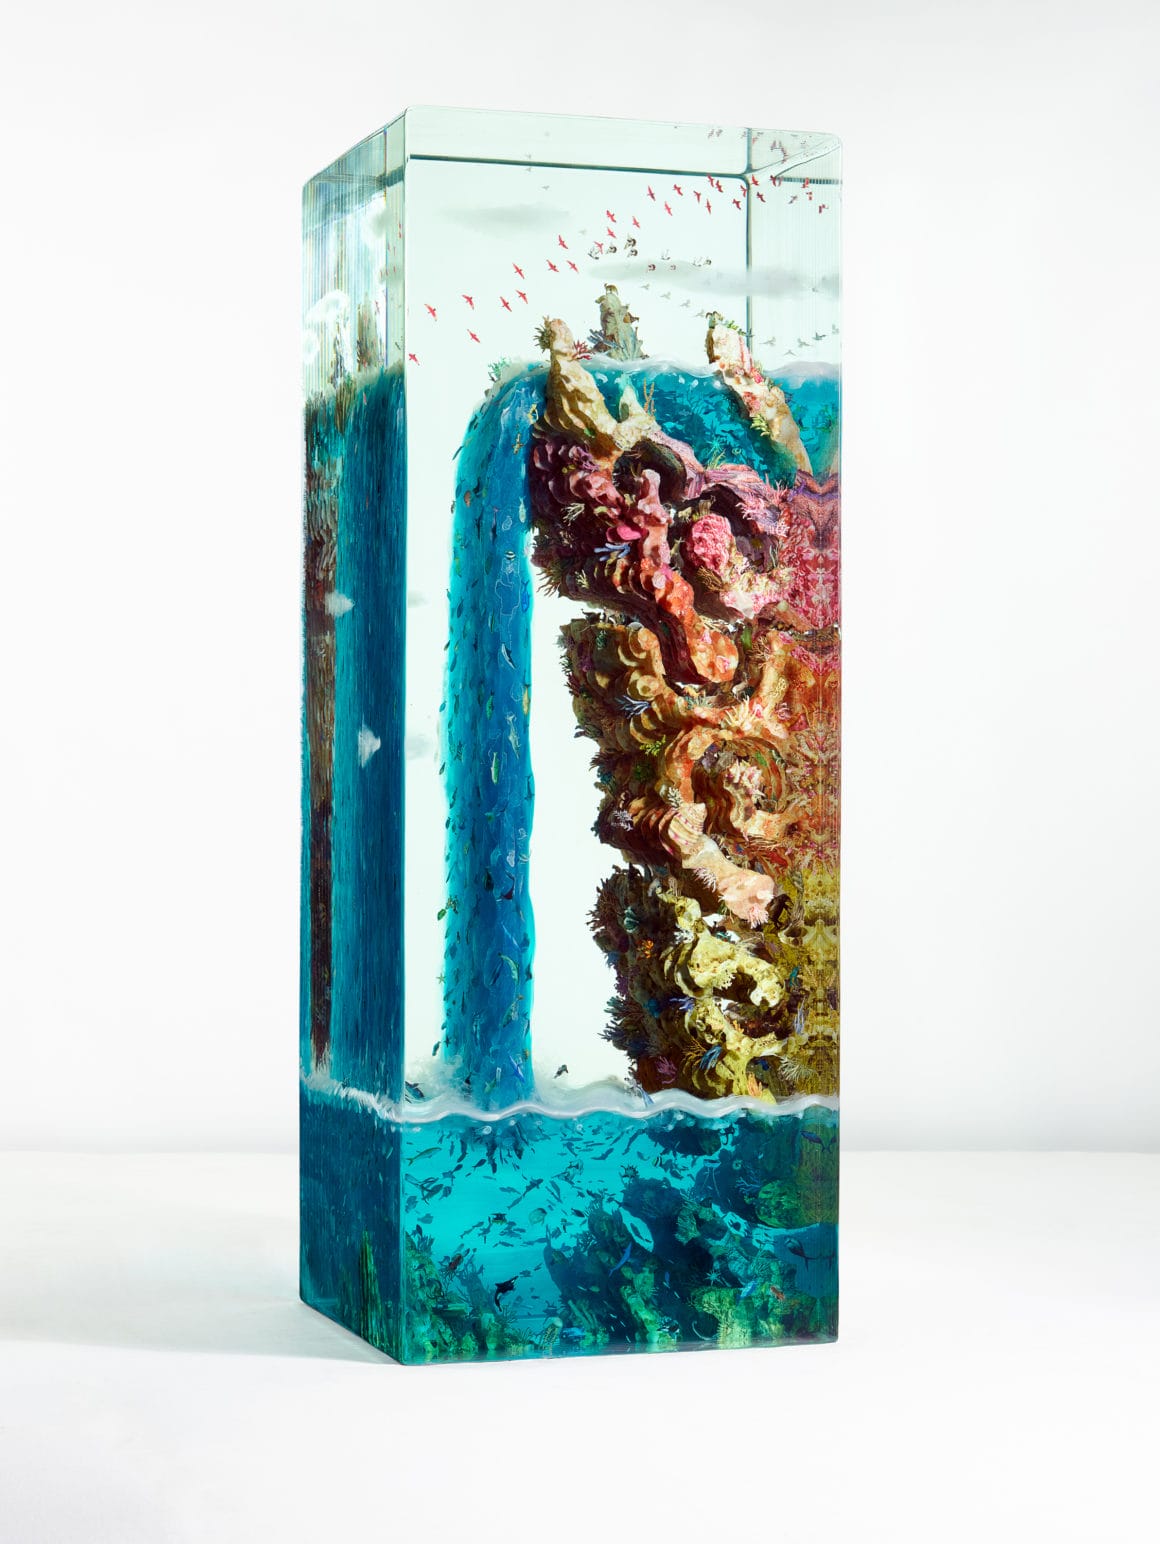 Dustin Yellin sculpture en verre représentant des fonds marins